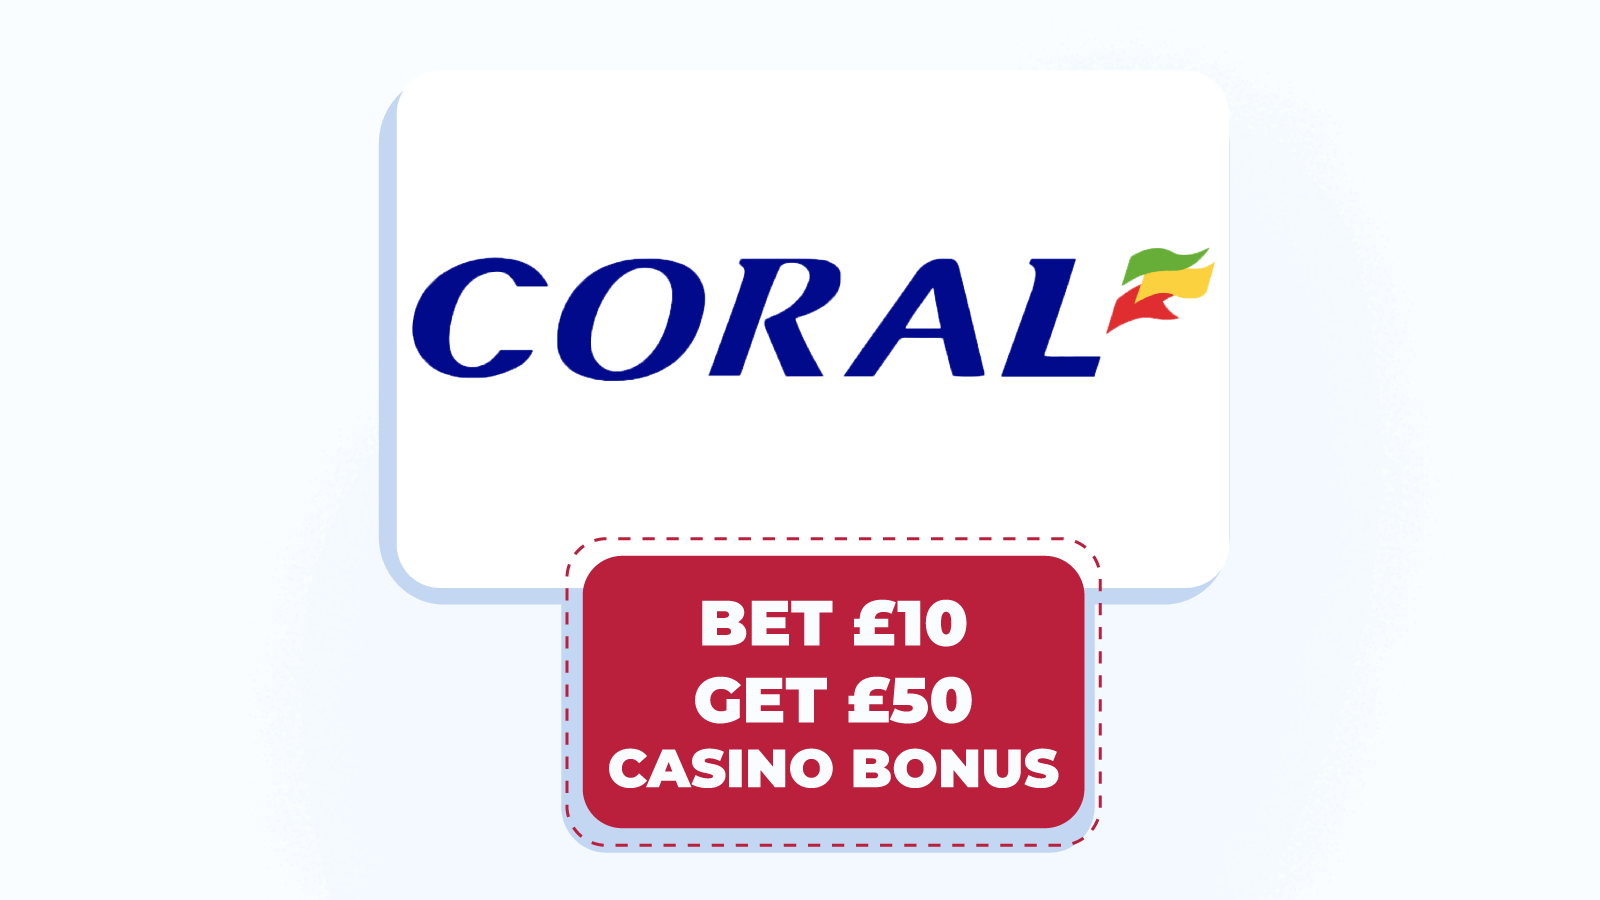 Bet £10, get £50 casino bonus at Coral – best 500% bonus